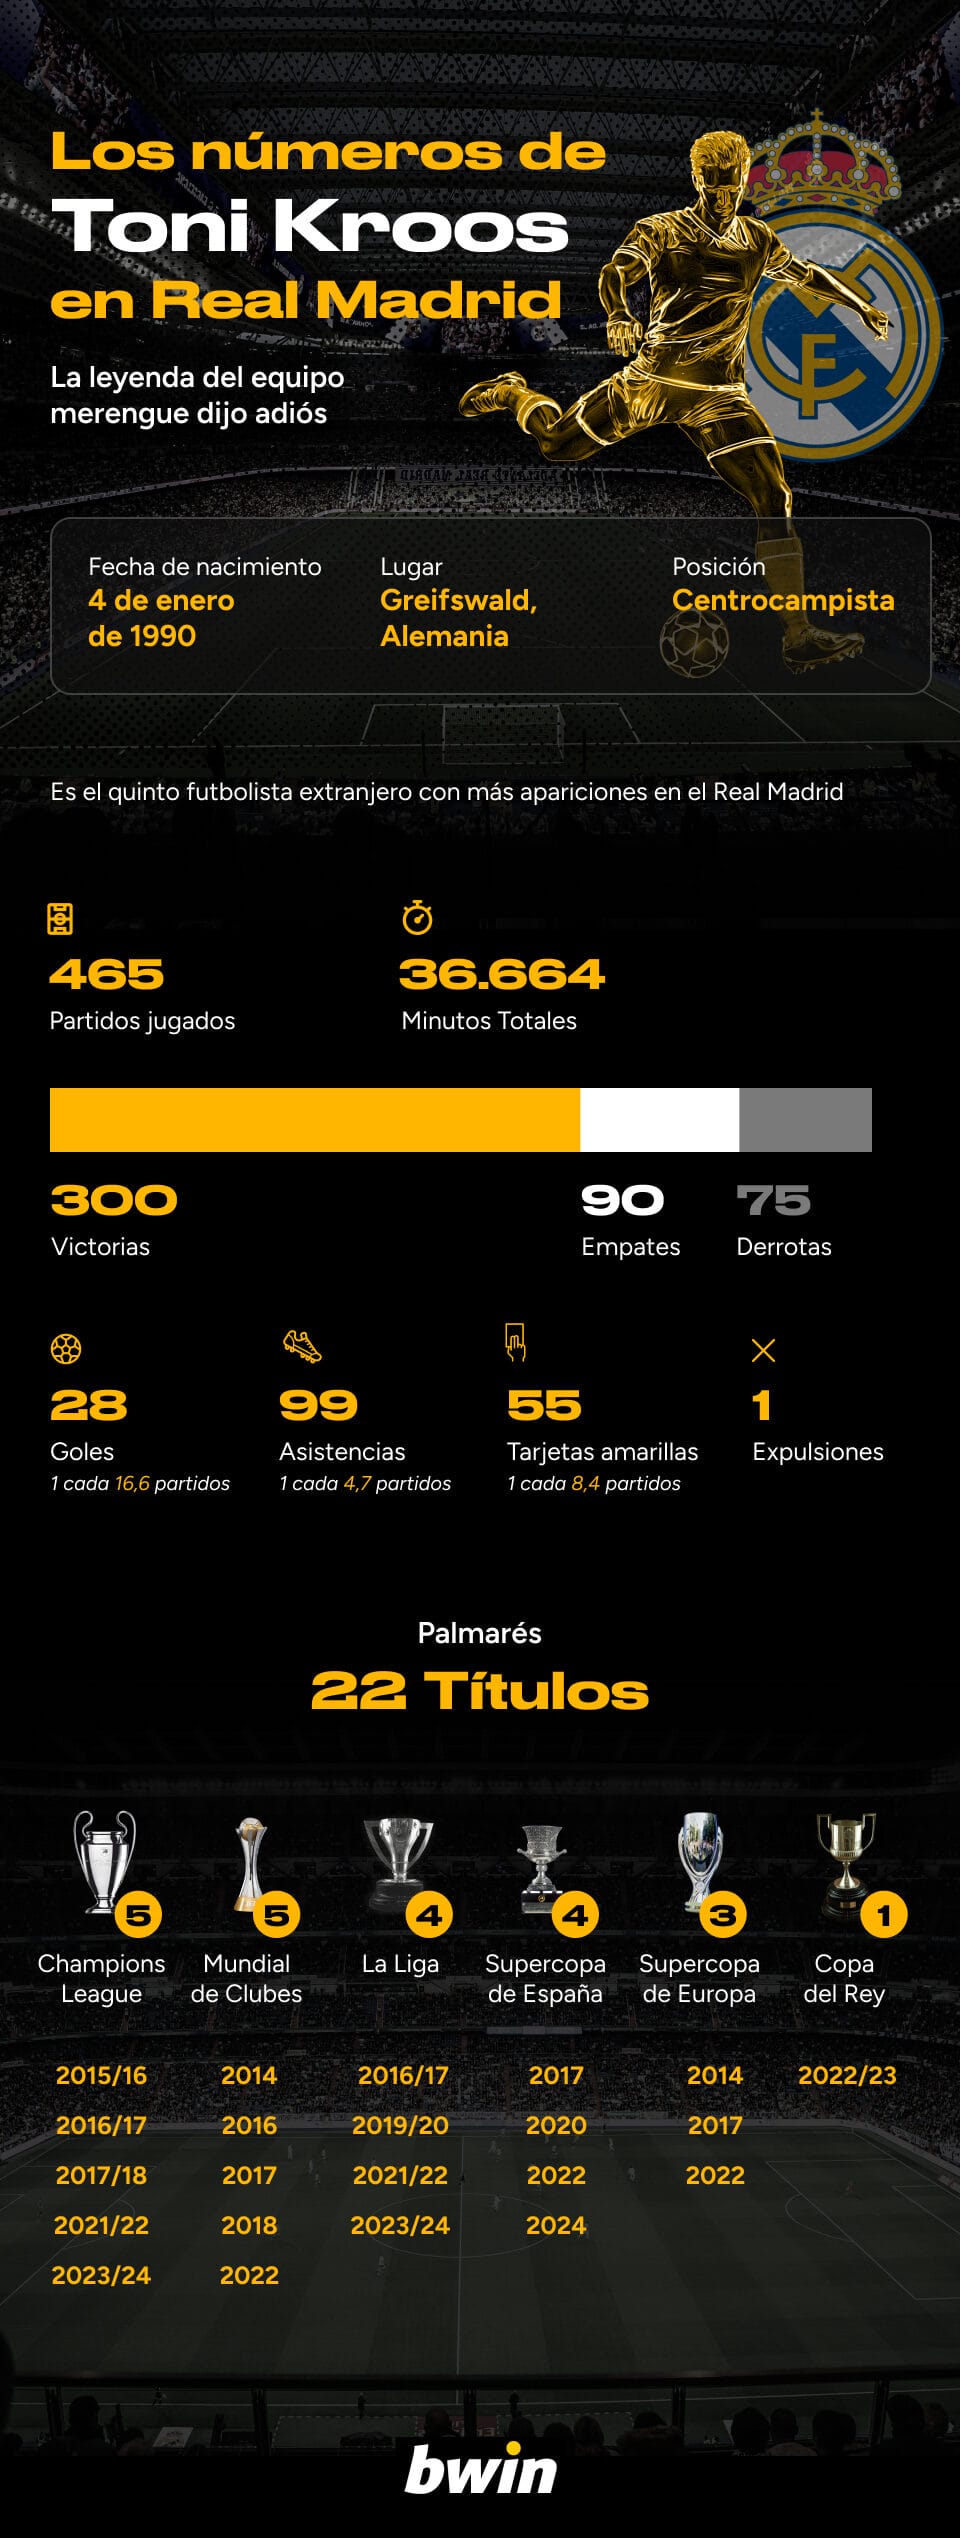 El francotirador cuelga las botas: estas son las estadísticas de Toni Kroos en el Real Madrid